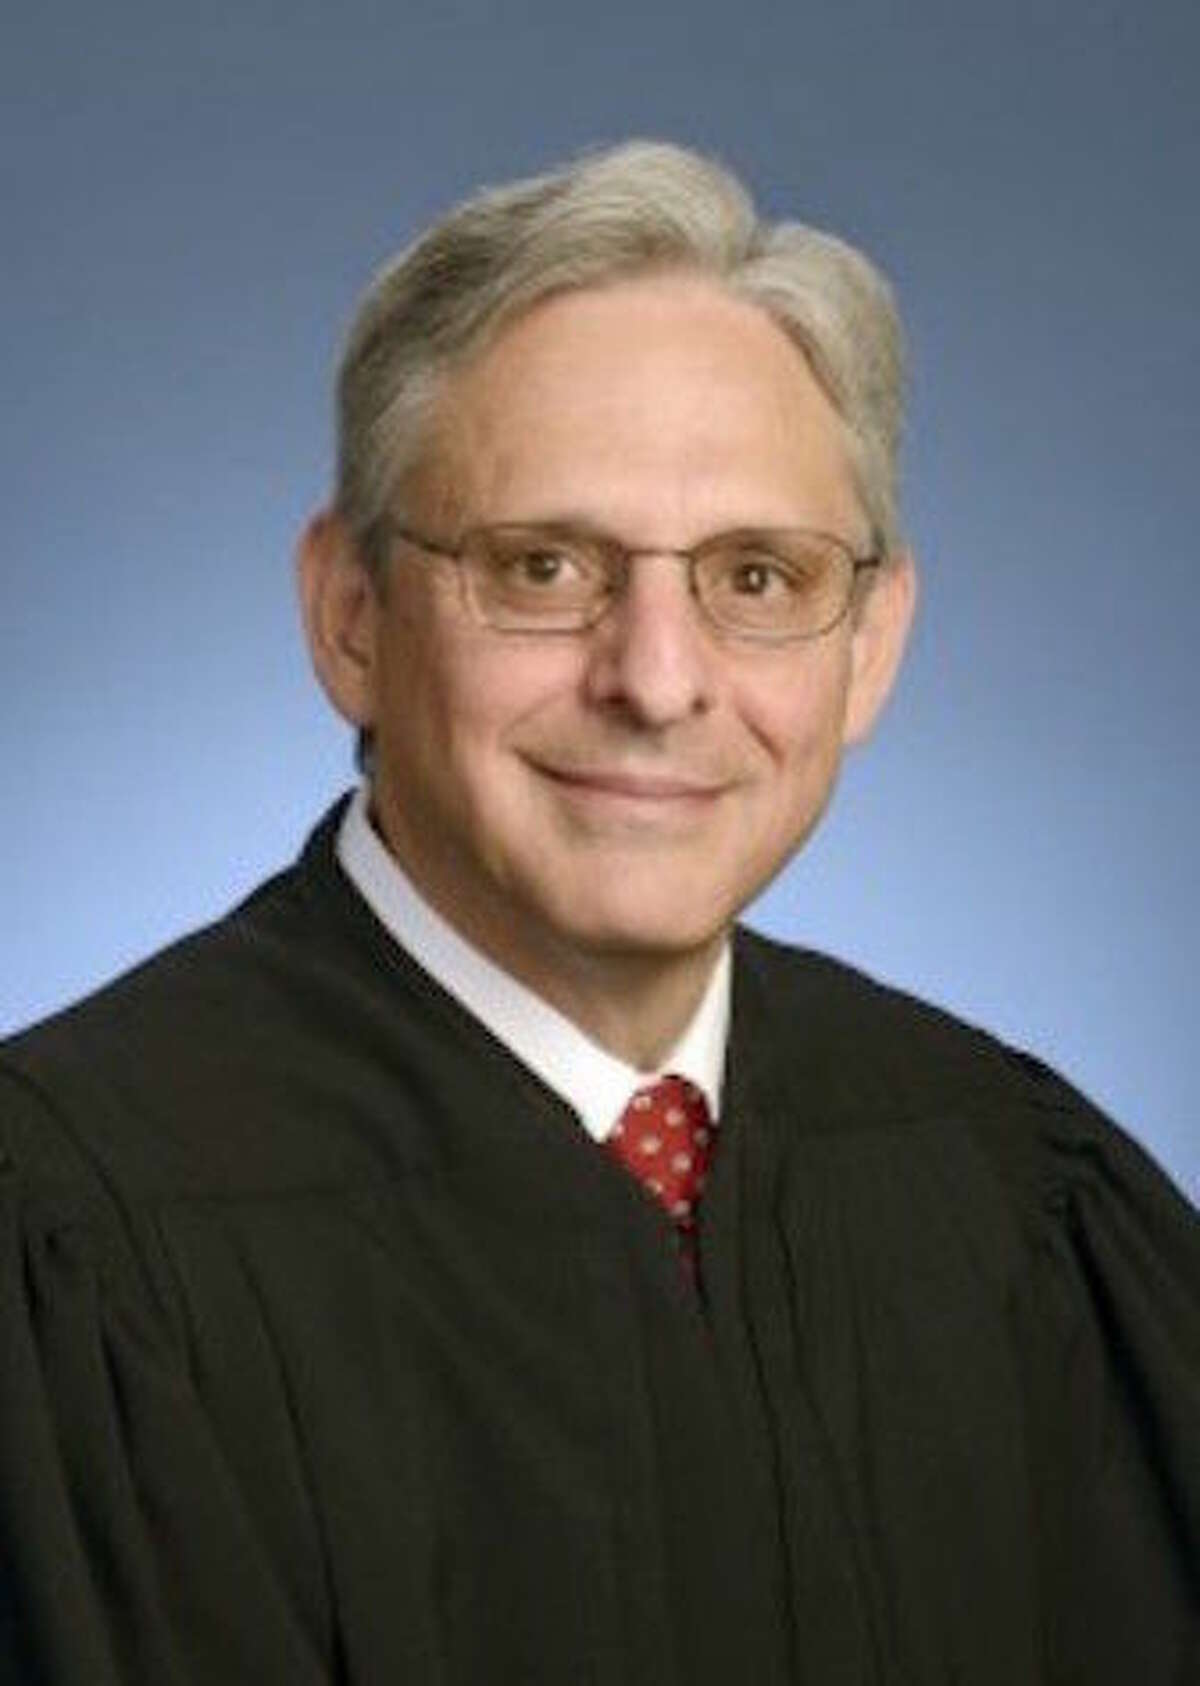 U.S. DEPARTMENT OF JUSTICE U.S. Supreme Court nominee Merrick Garland